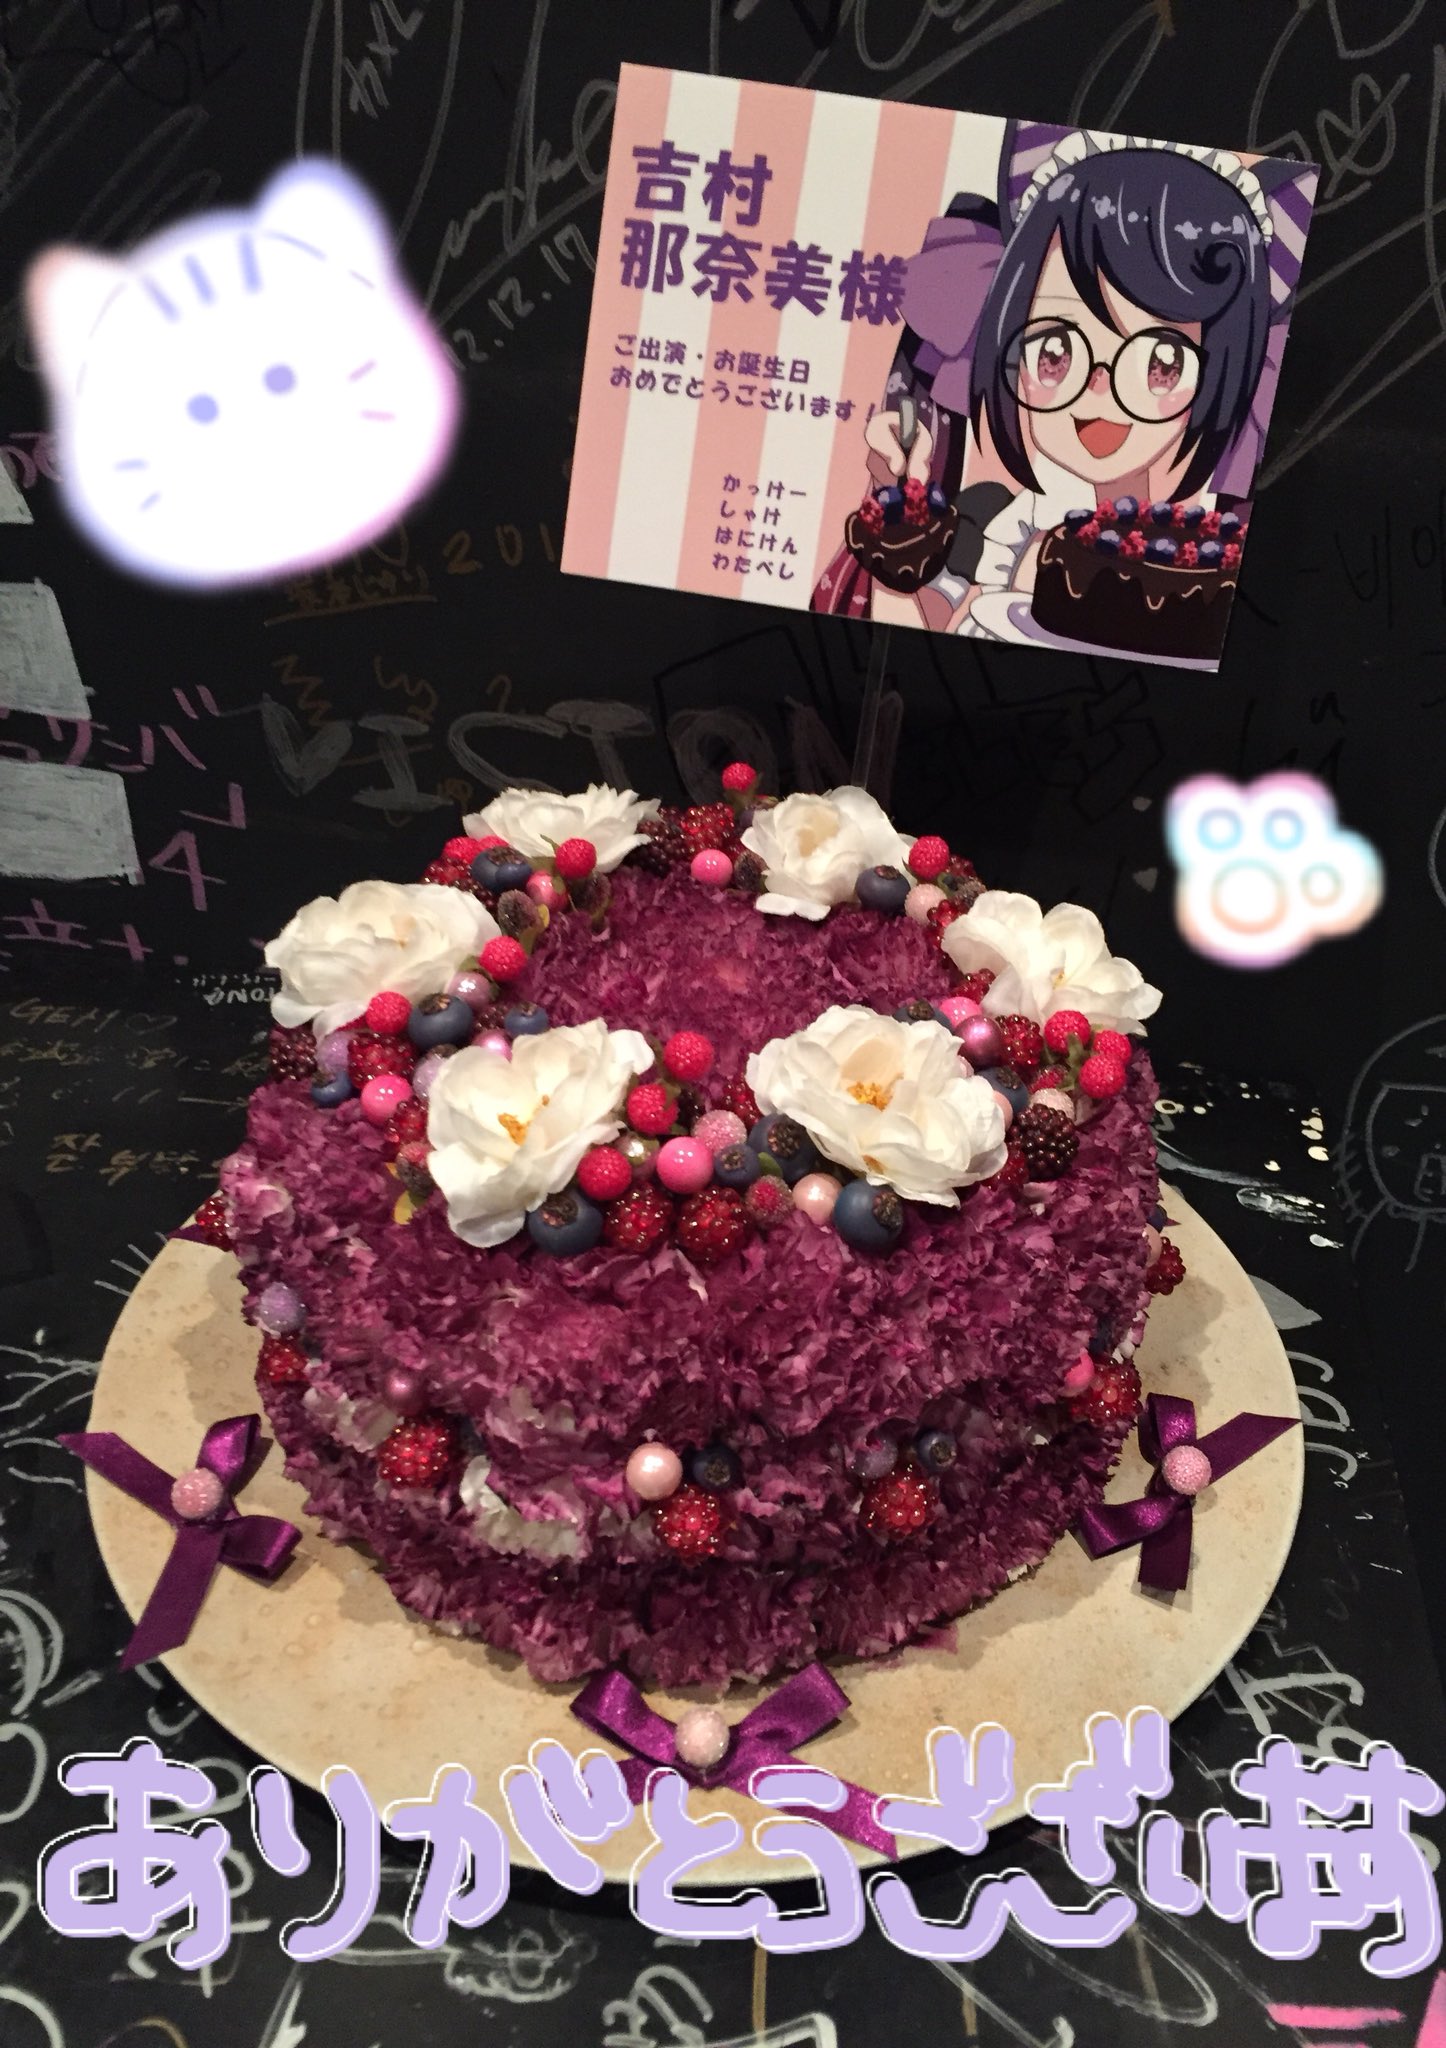 吉村那奈美 Twitter પર ケーキ型のお花をいただきました 紫色のケーキ ベリー系がたくさんで 上に飾られてる白いお花も素敵 かわいいイラスト Amp お花ありがとうございます ほたるちゃんにあーん してもらえるなら 吉村はケーキ頑張って食べるよ